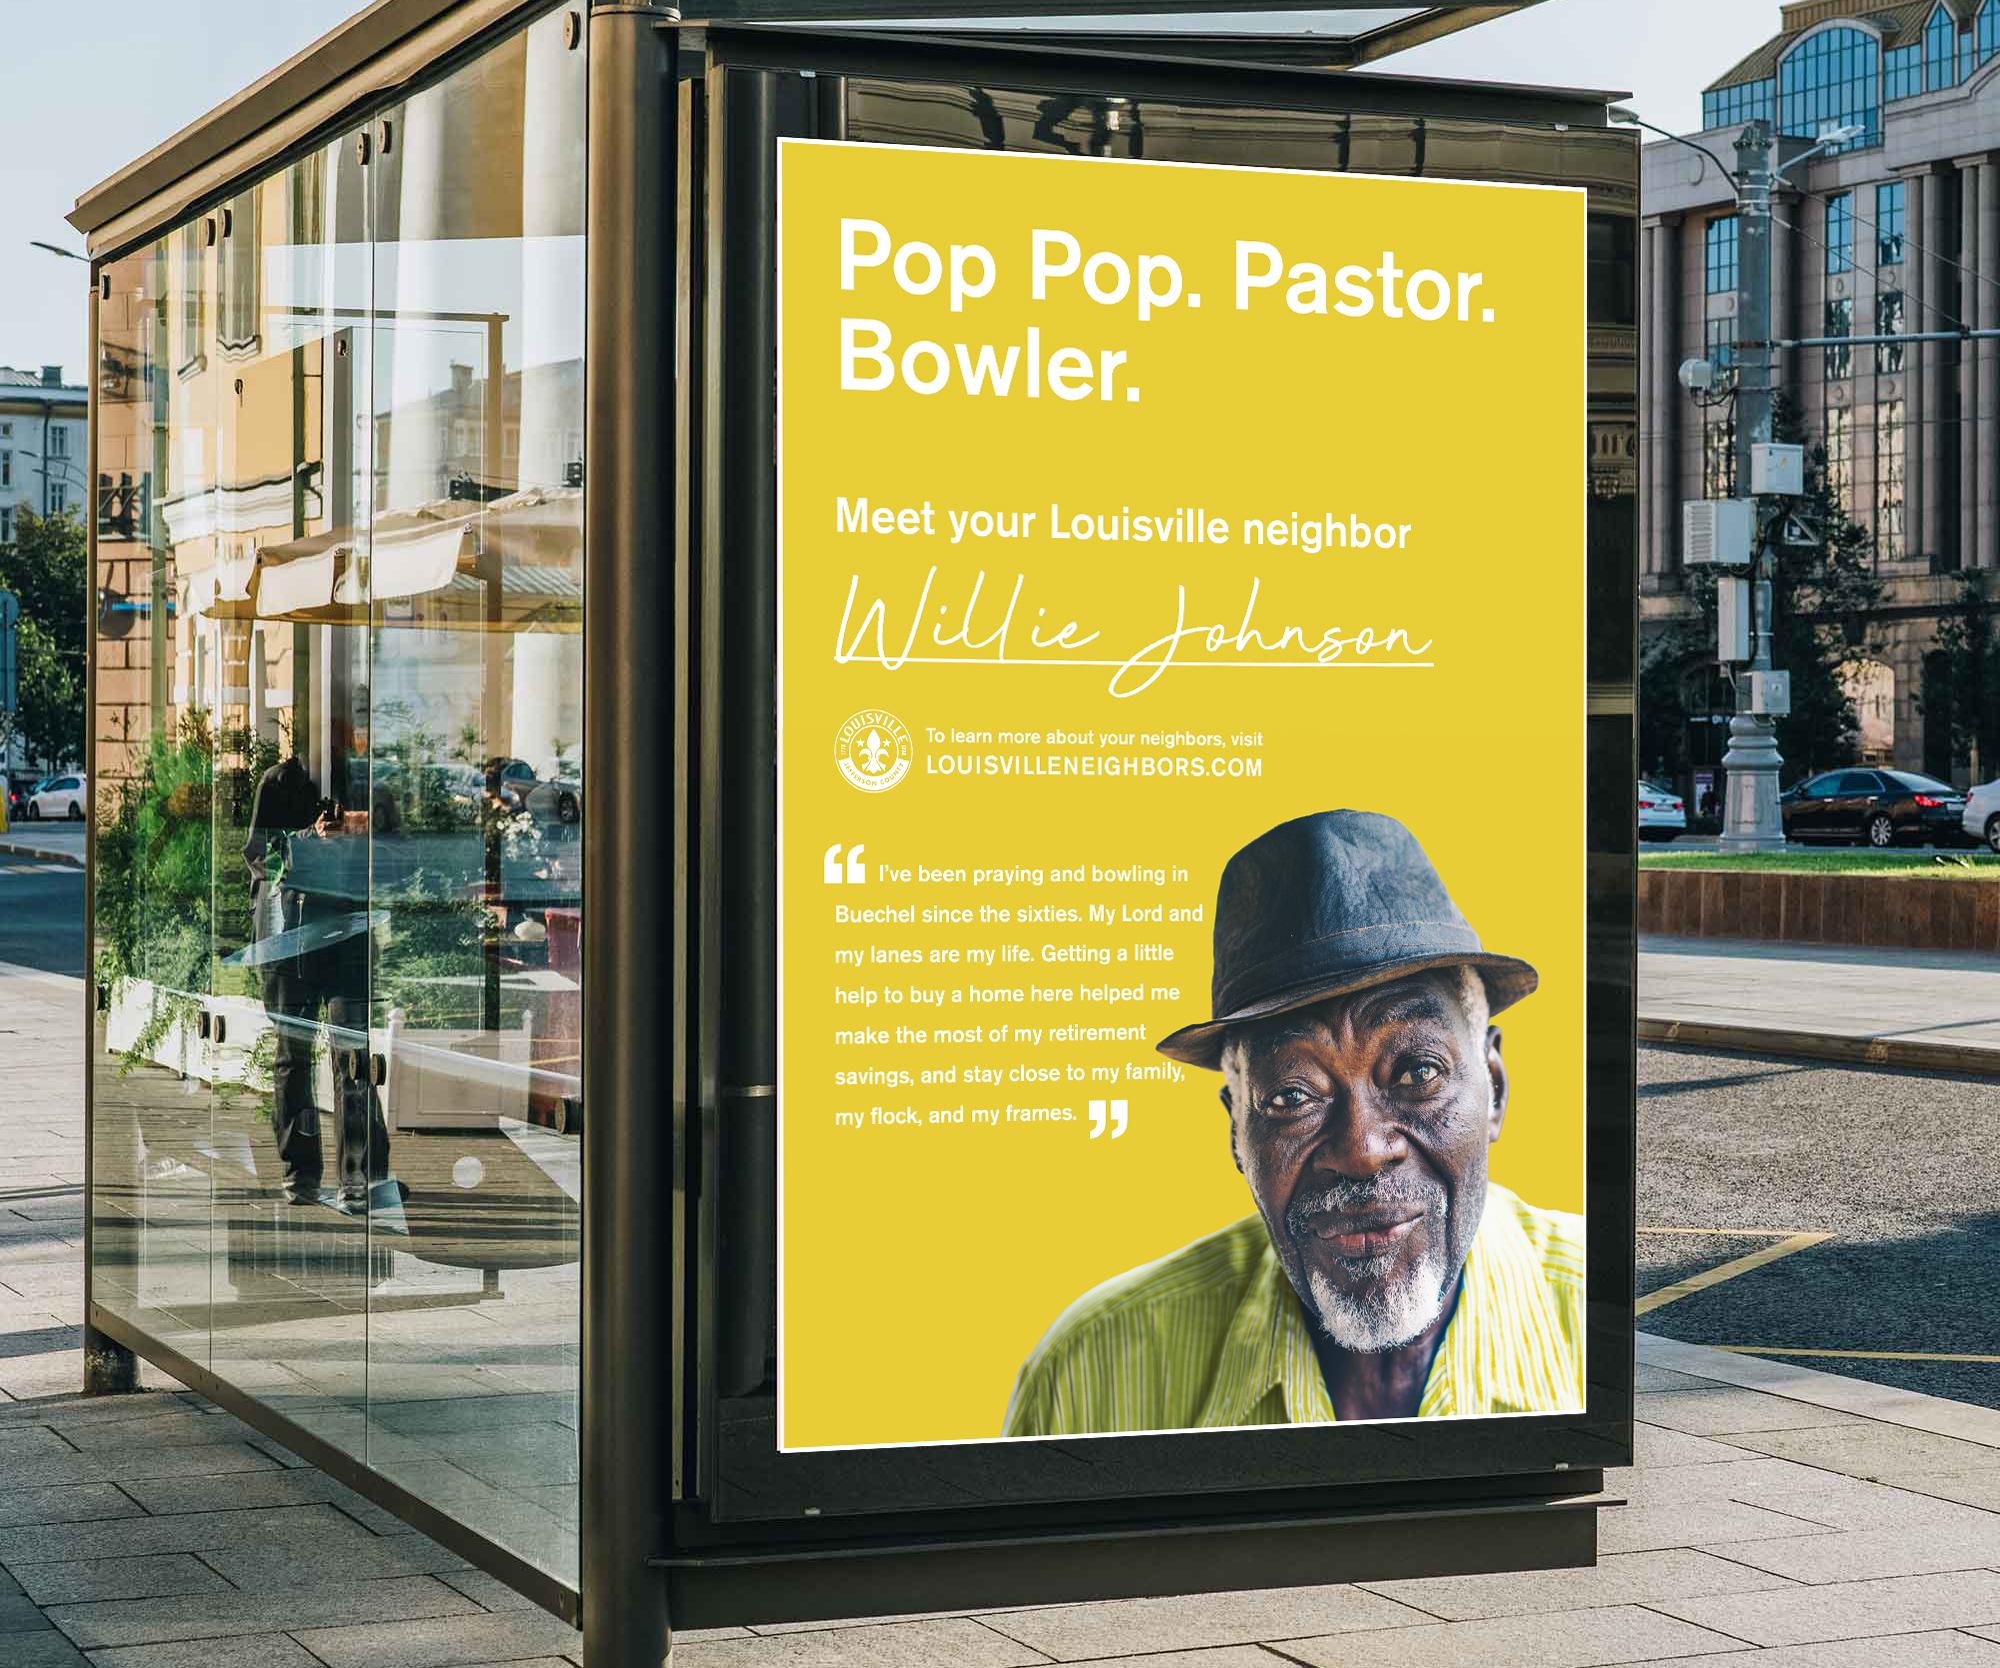 Bus shelter advertisement. "Pop pop. Paster. Bowler. Meet your Louisville neighbor."